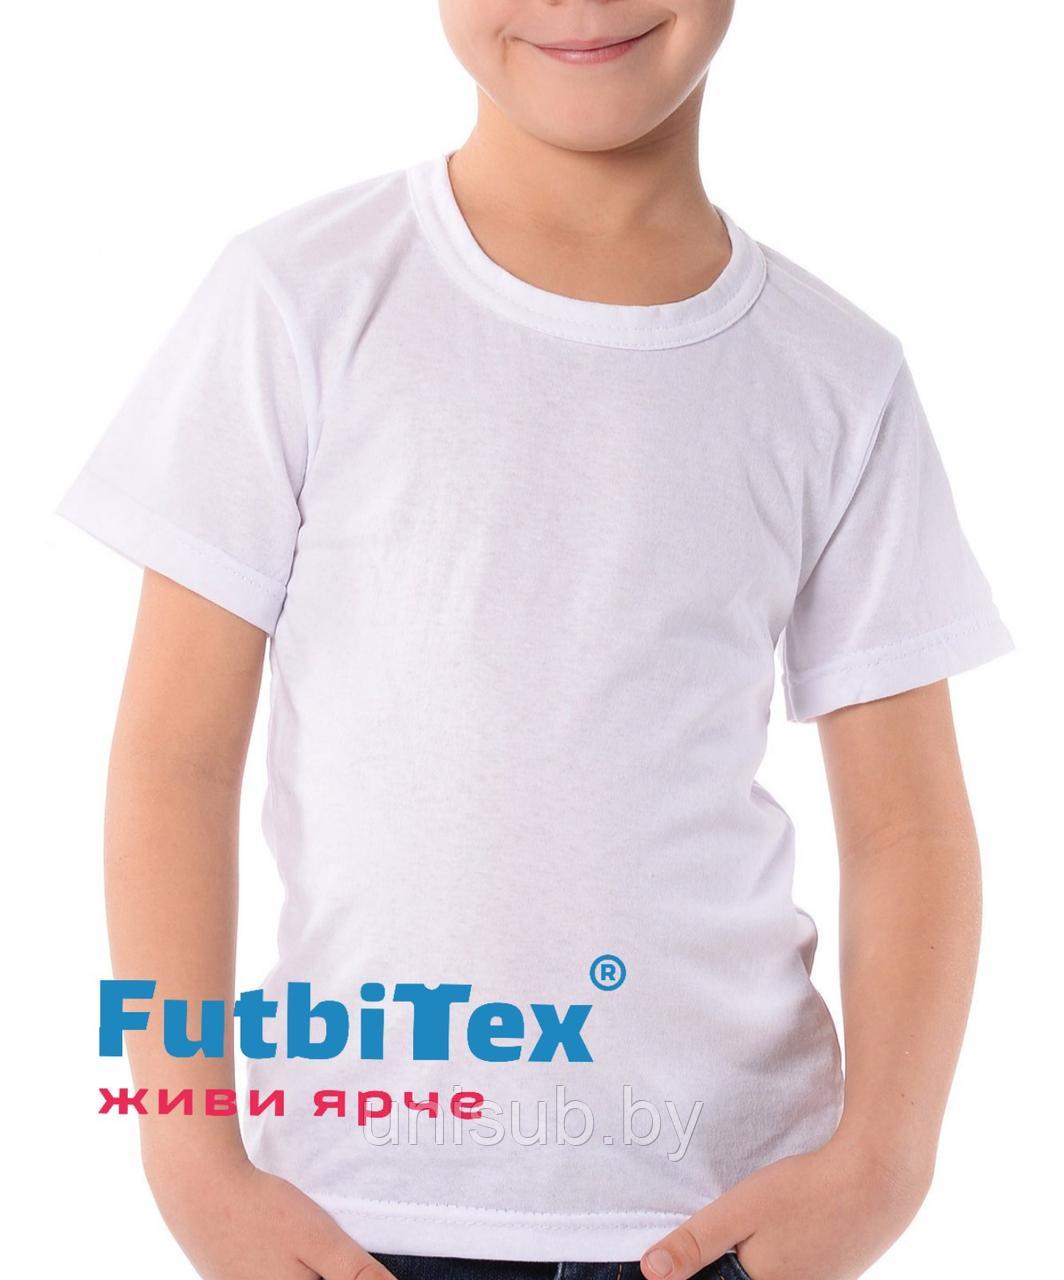 Футболка детская FutbiTex Evolution, белая, 24 (рост 98)